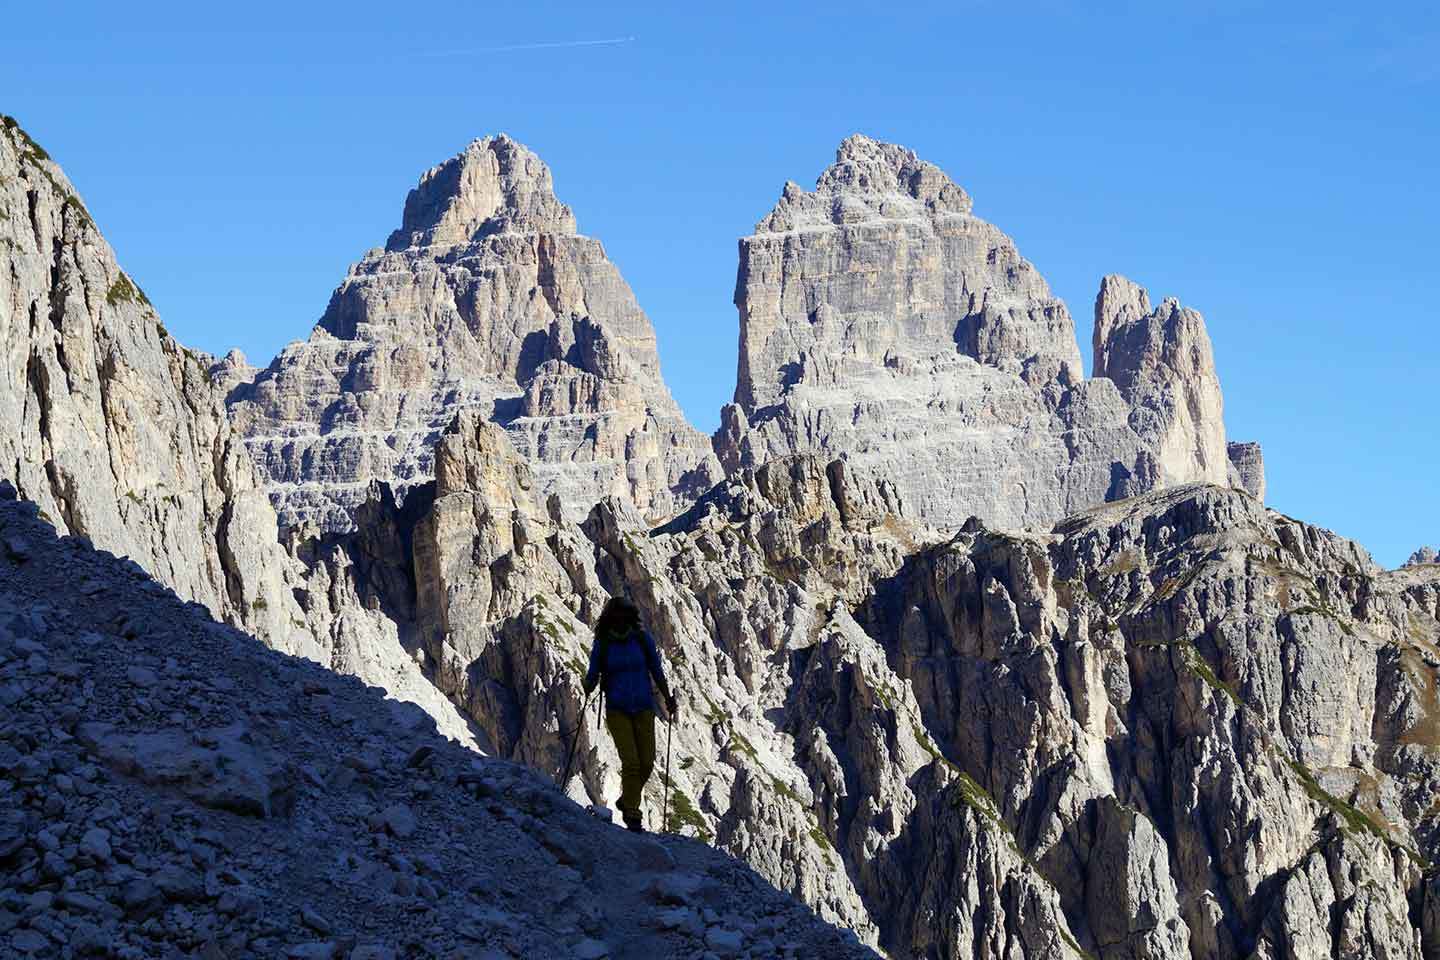 Dolomite High Route no. 4 - Tre Cime di Lavaredo from Cadini di Misurina